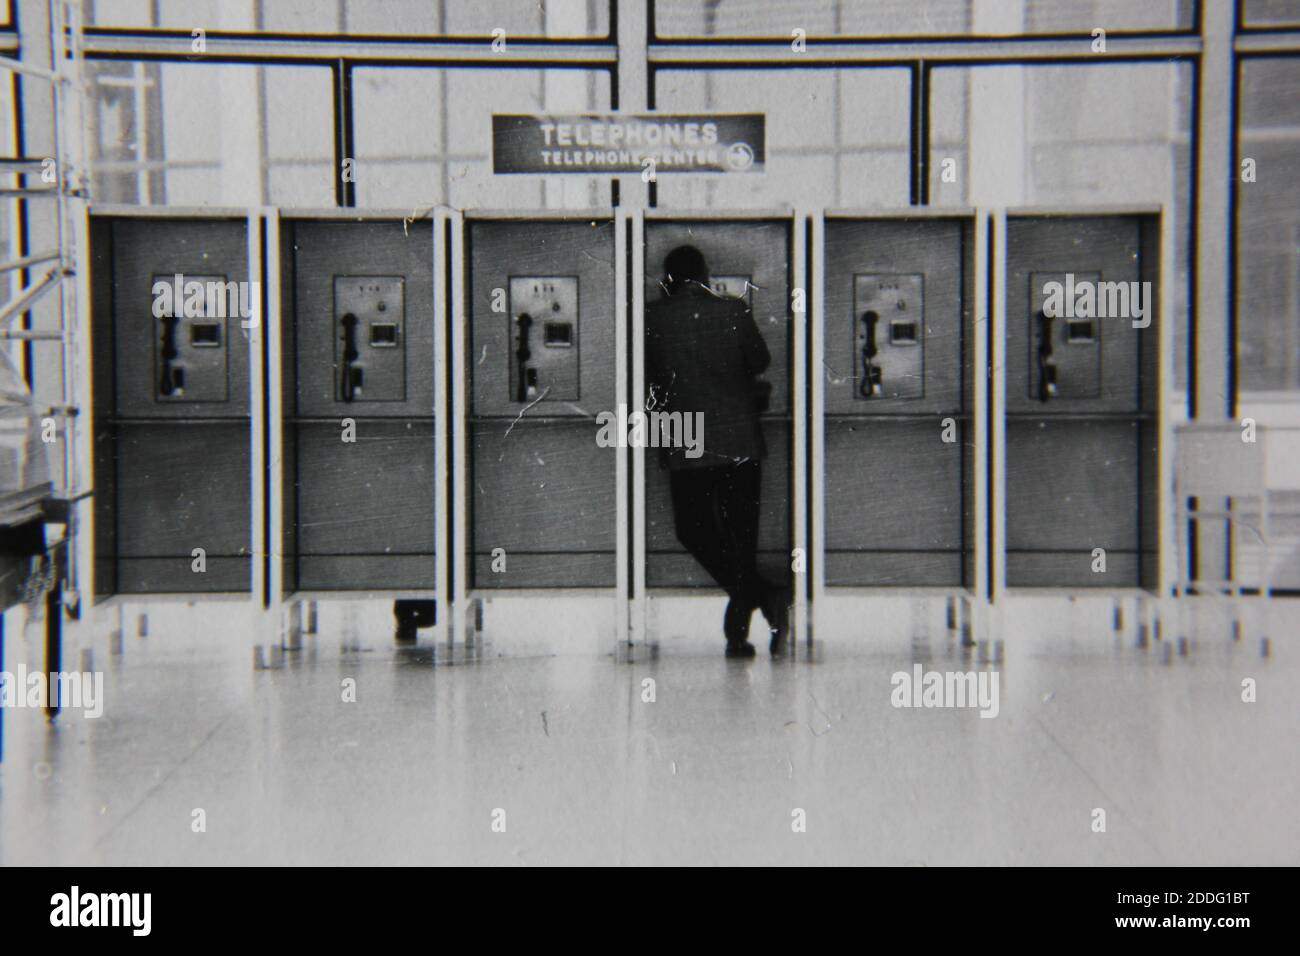 Bella fotografia in bianco e nero degli anni '70 di un normale ragazzo che parla su un telefono fisso pubblico in una lobby pubblica. Foto Stock